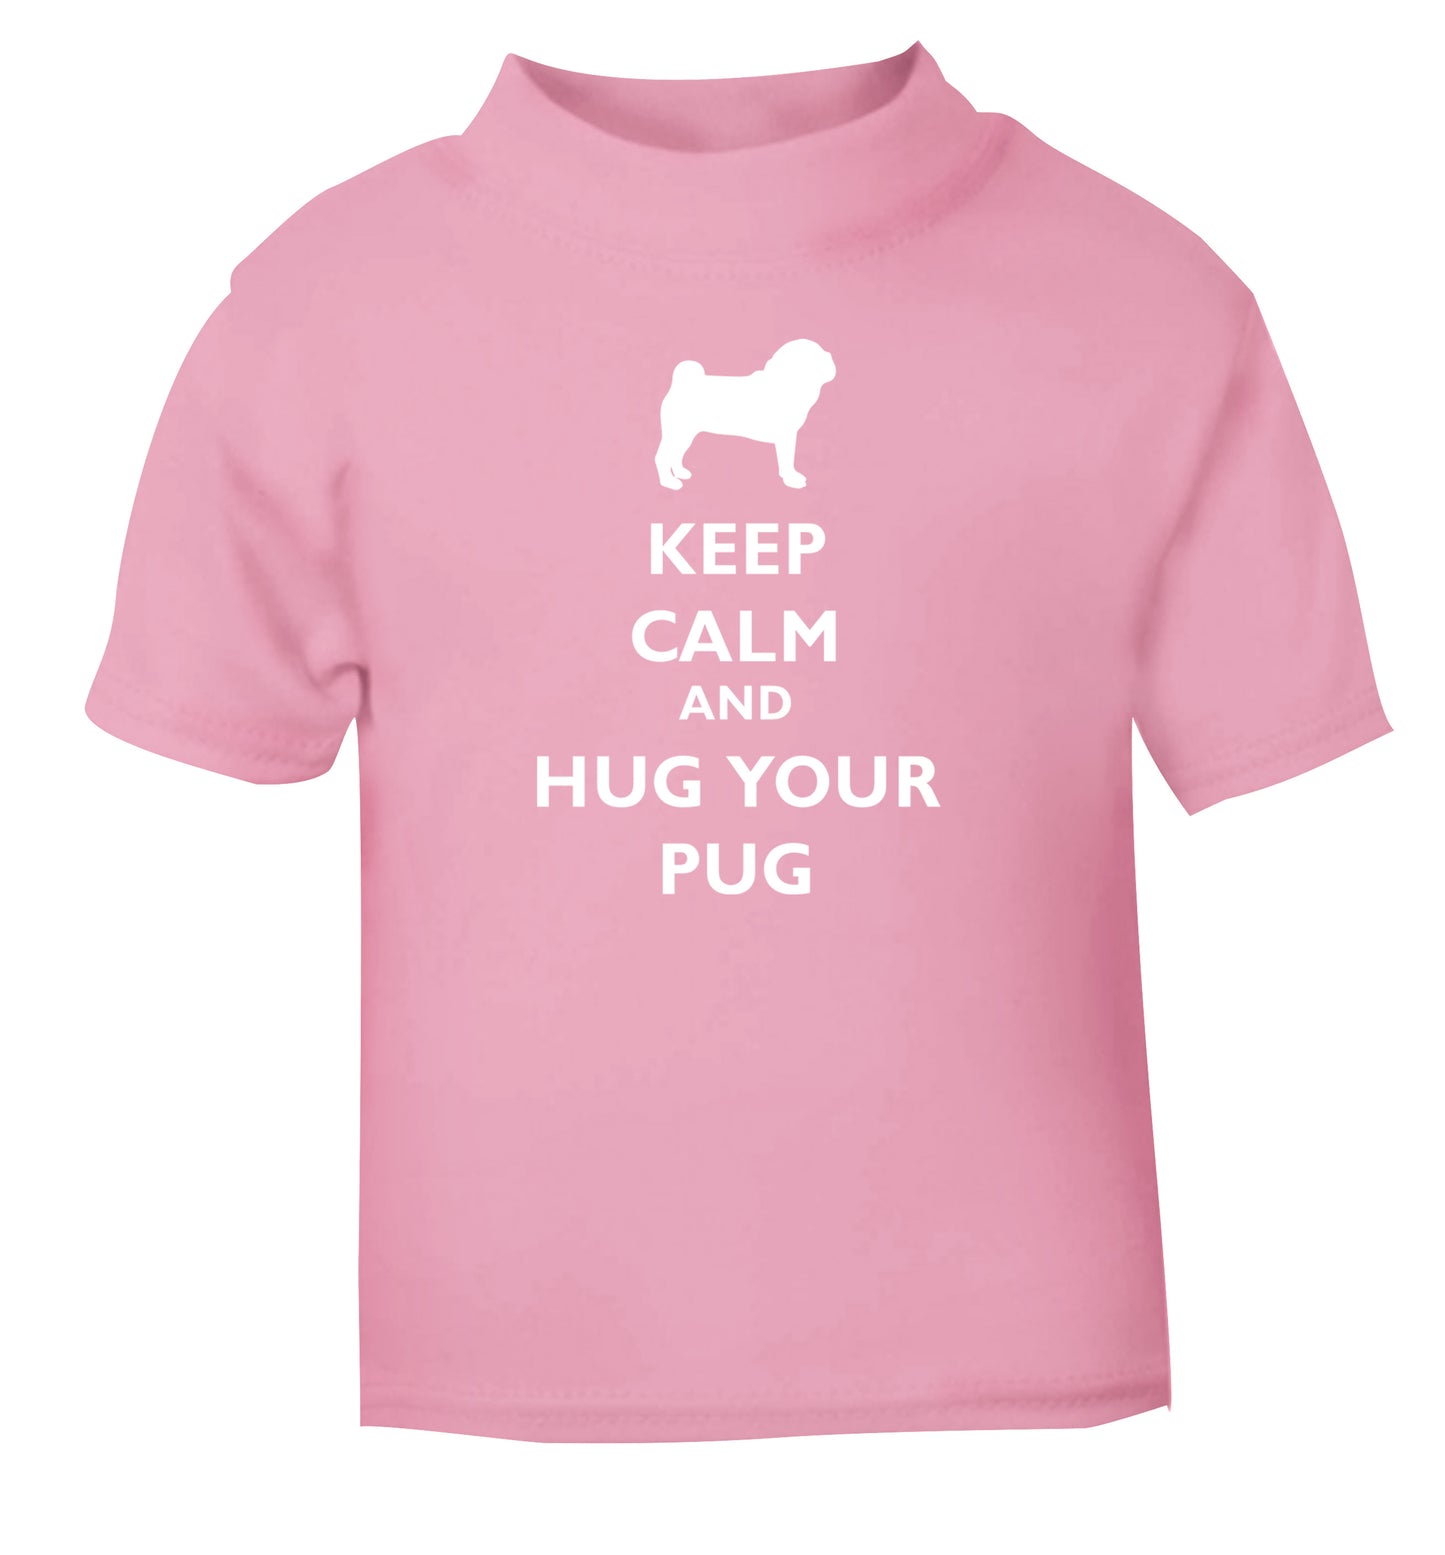 Keep calm and hug your pug light pink Baby Toddler Tshirt 2 Years